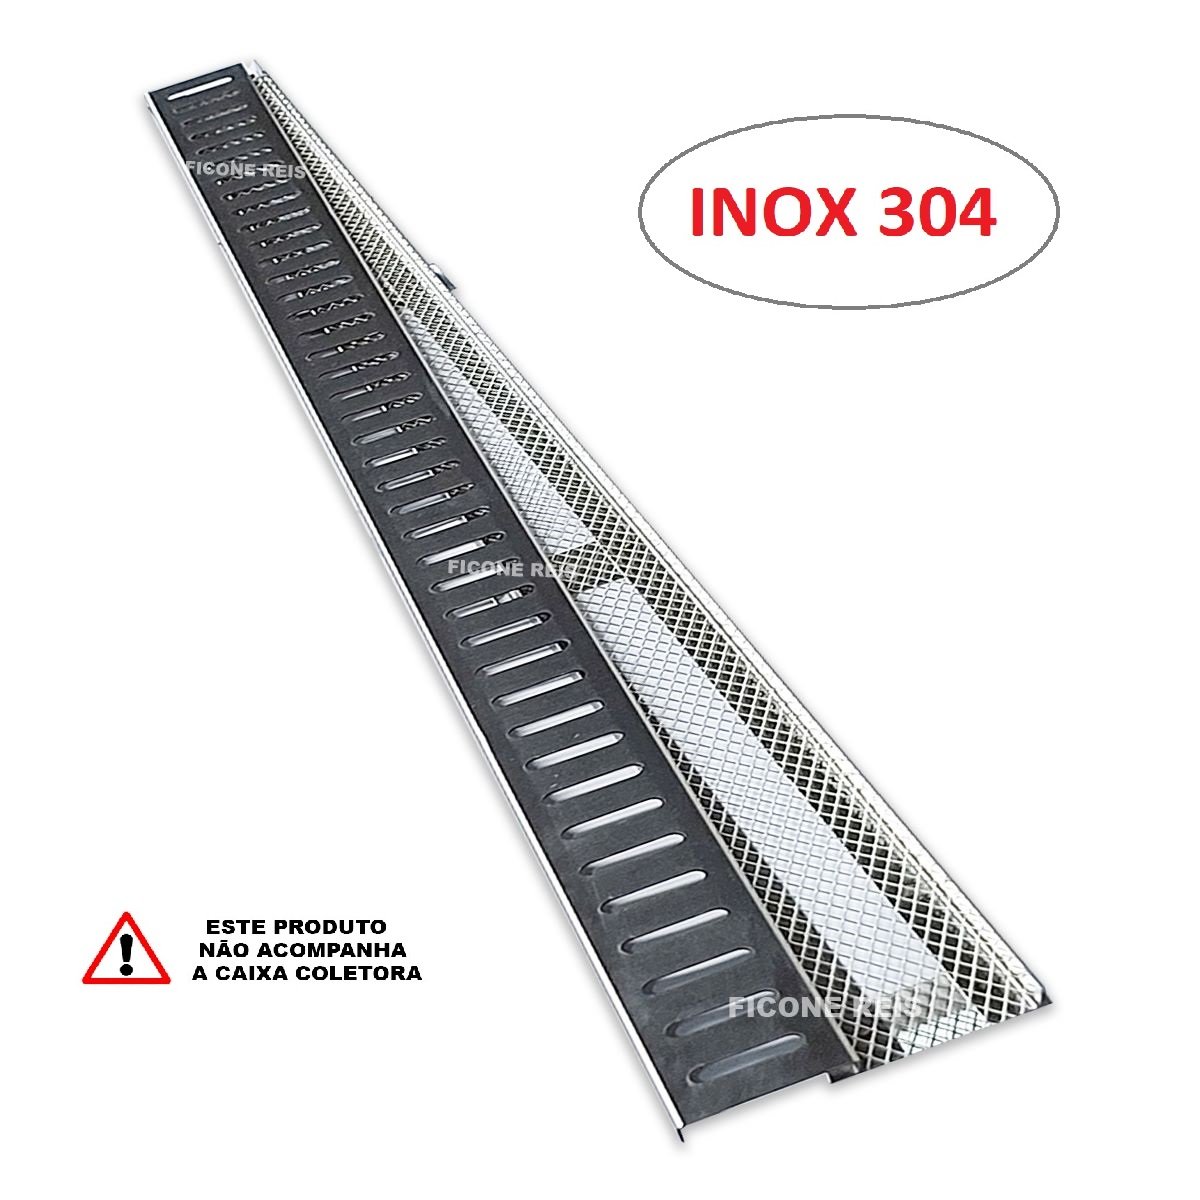 Ralo Linear 5cm x 50cm Inox 304 com suporte e Tela Anti Insetos Borda de Piscina Ficone Reis - 3